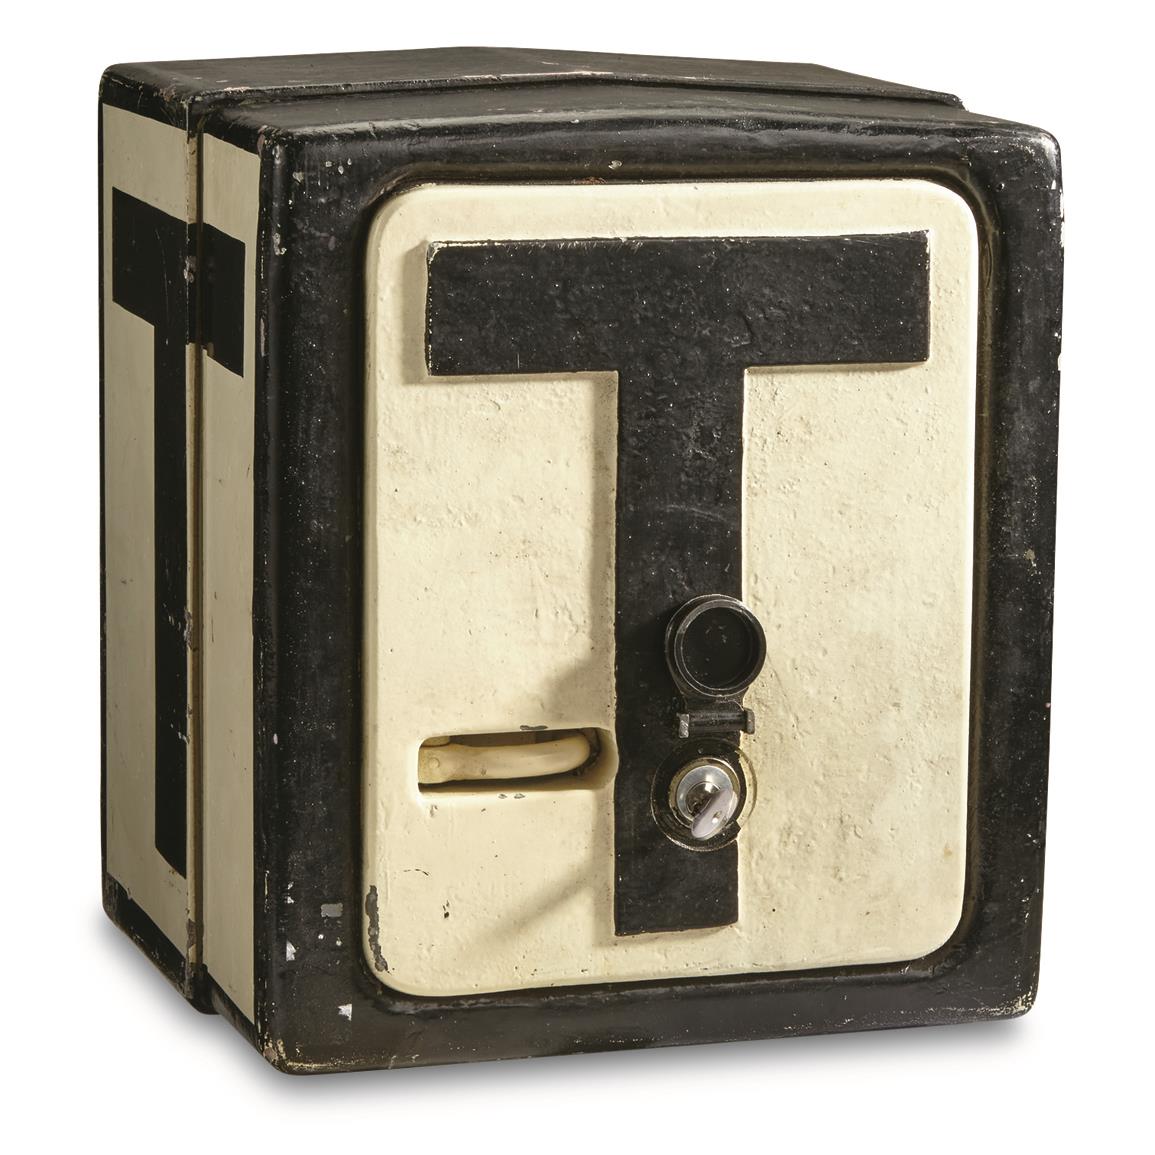 German Military Surplus Vintage Railroad Phone Box, Used